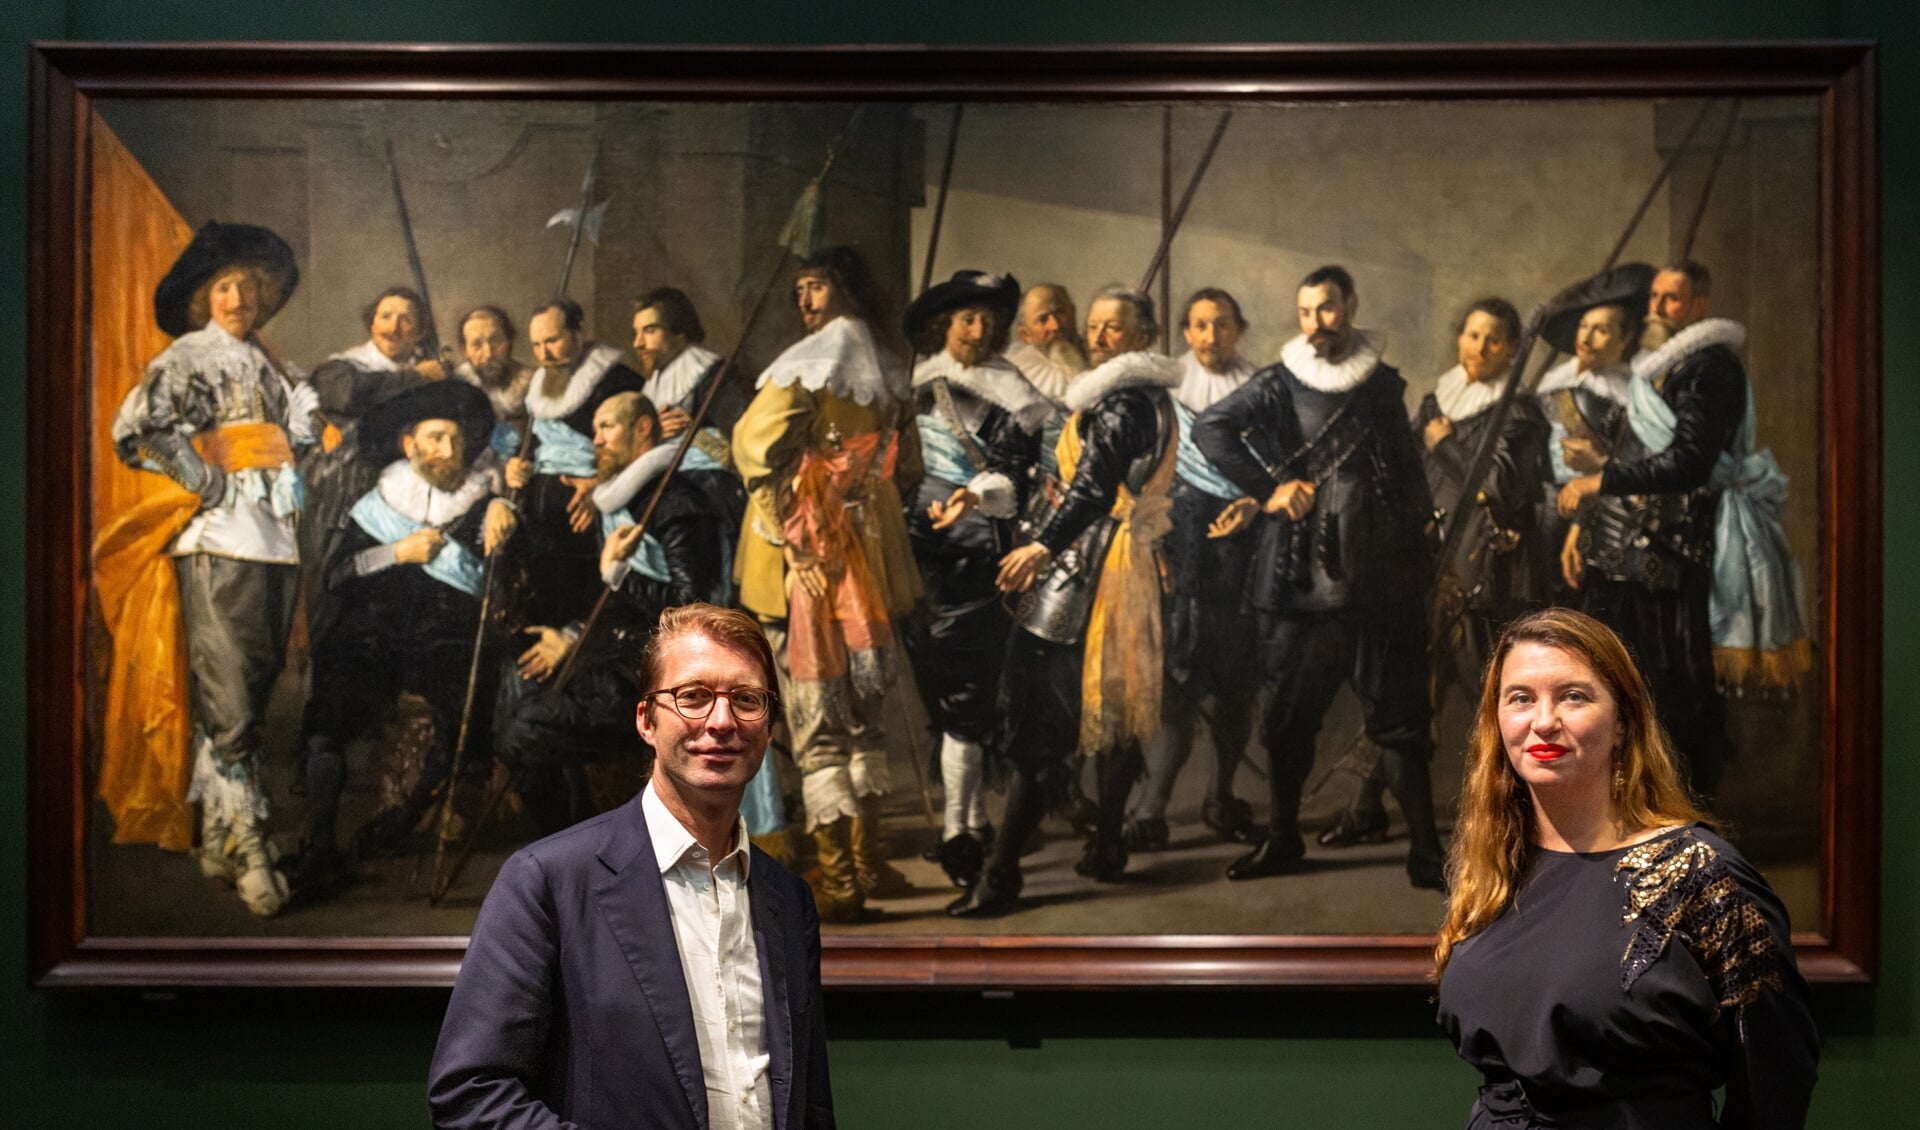 Taco Dibbets, Directeur Rijksmuseum, en Ann Demeester, Directeur Frans Hals Museum voor ‘De Magere Compagnie’ 